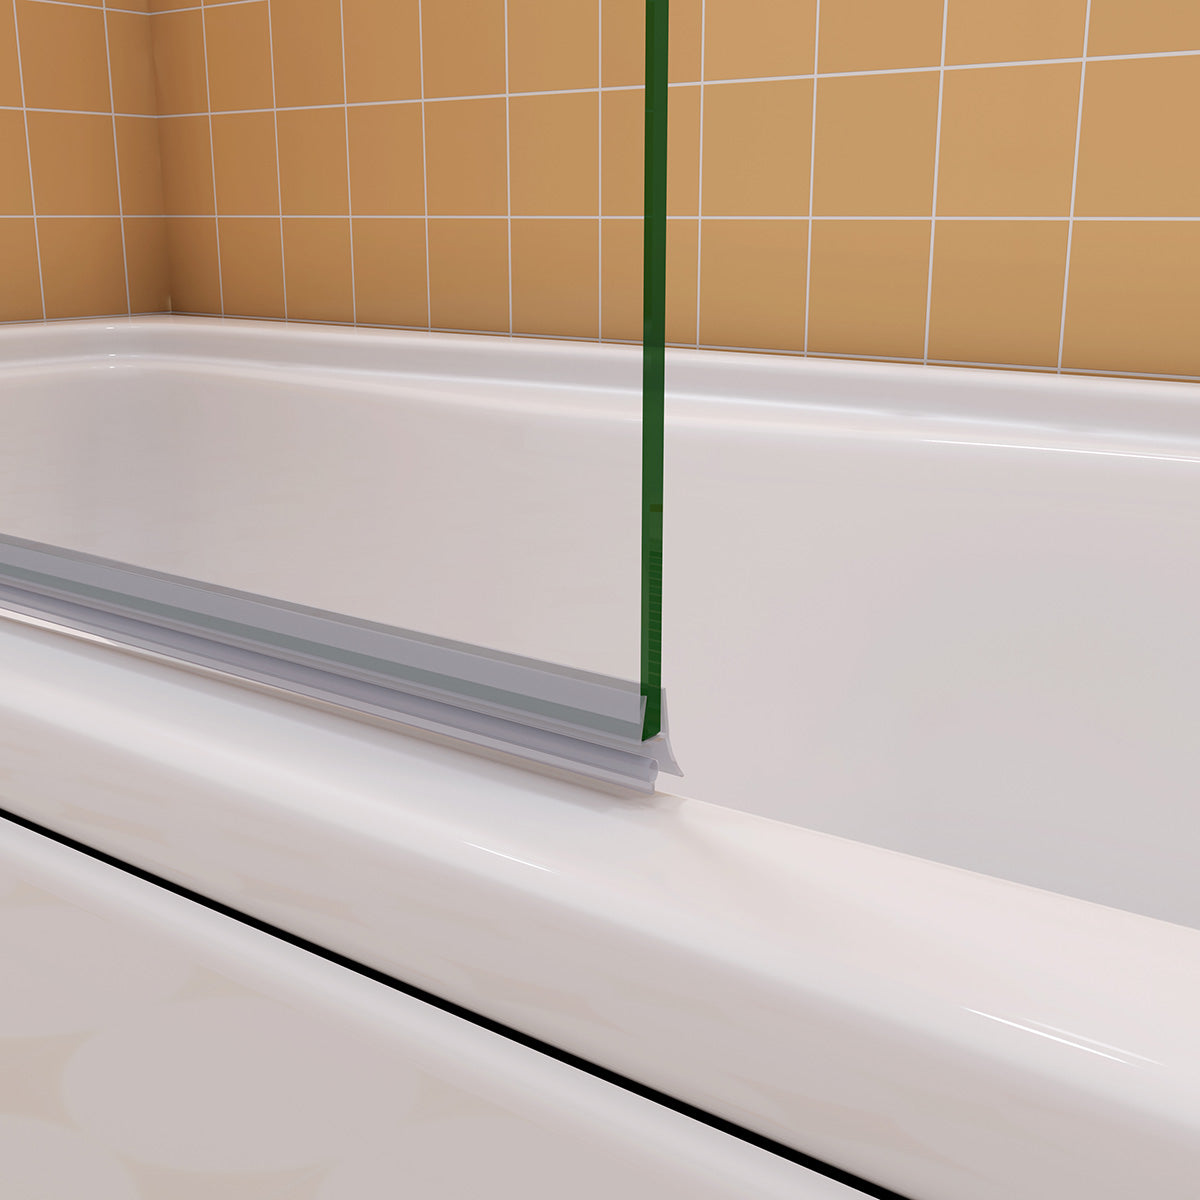 Badewannenaufsatz 120 cm Tiefe 75 cm Seitenwand Dusche Duschabtrennung Duschkabine